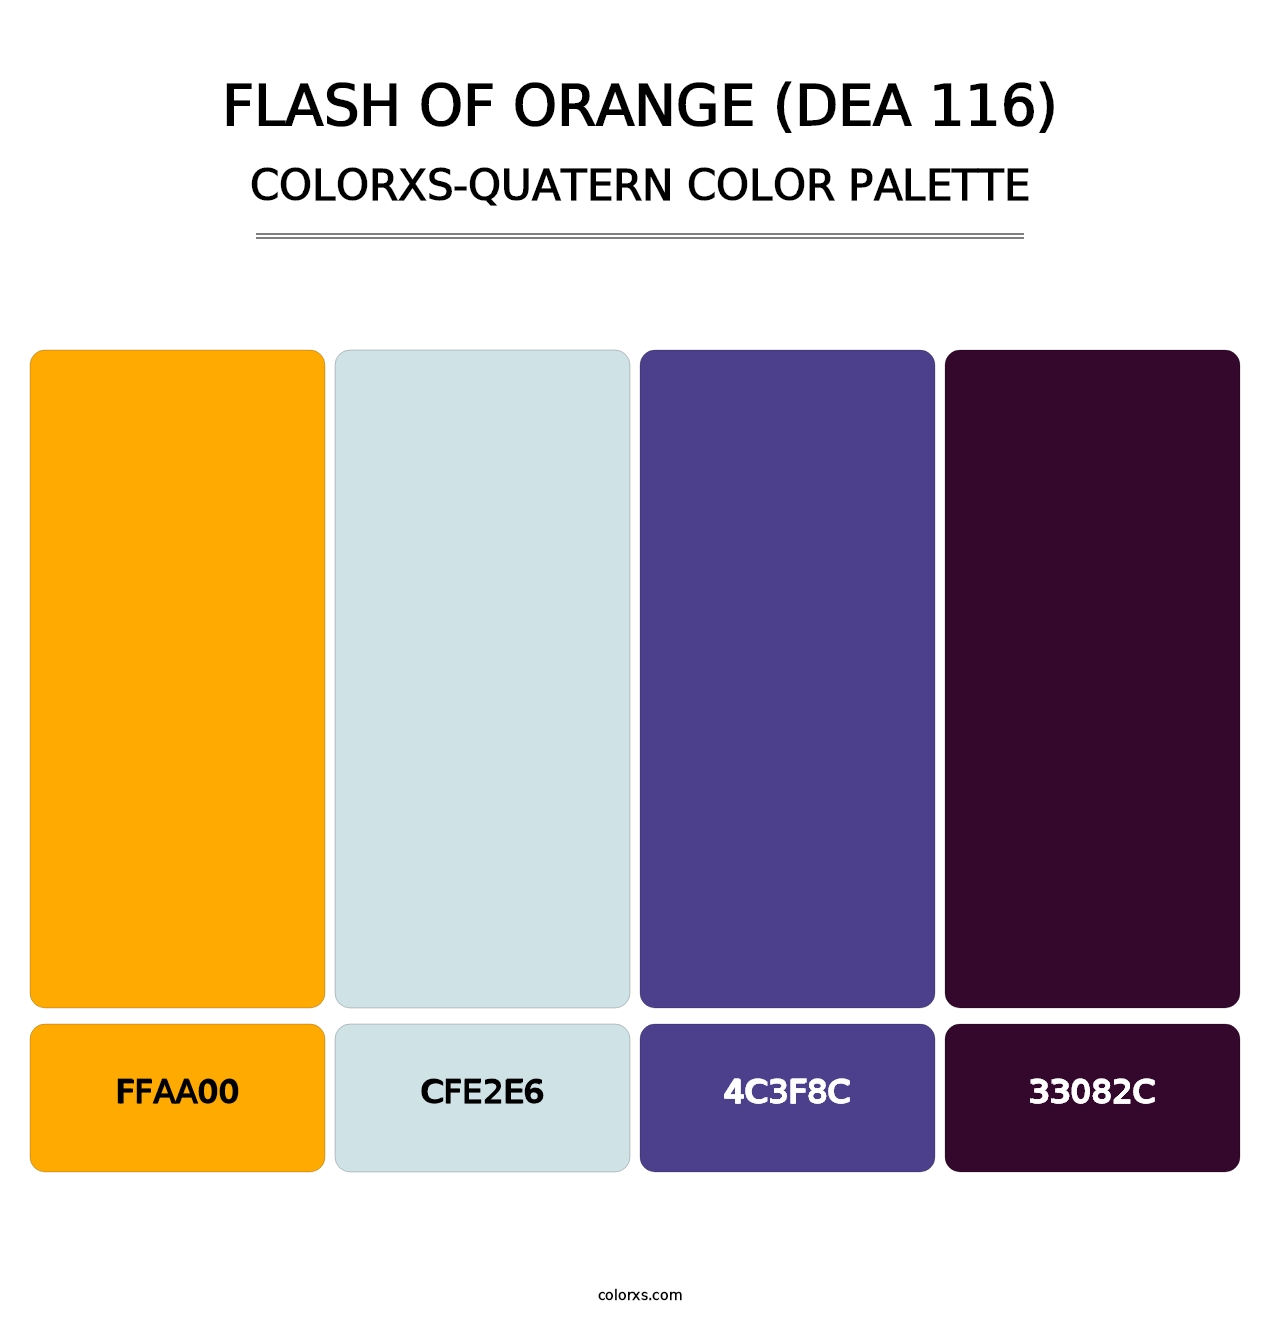 Flash of Orange (DEA 116) - Colorxs Quatern Palette